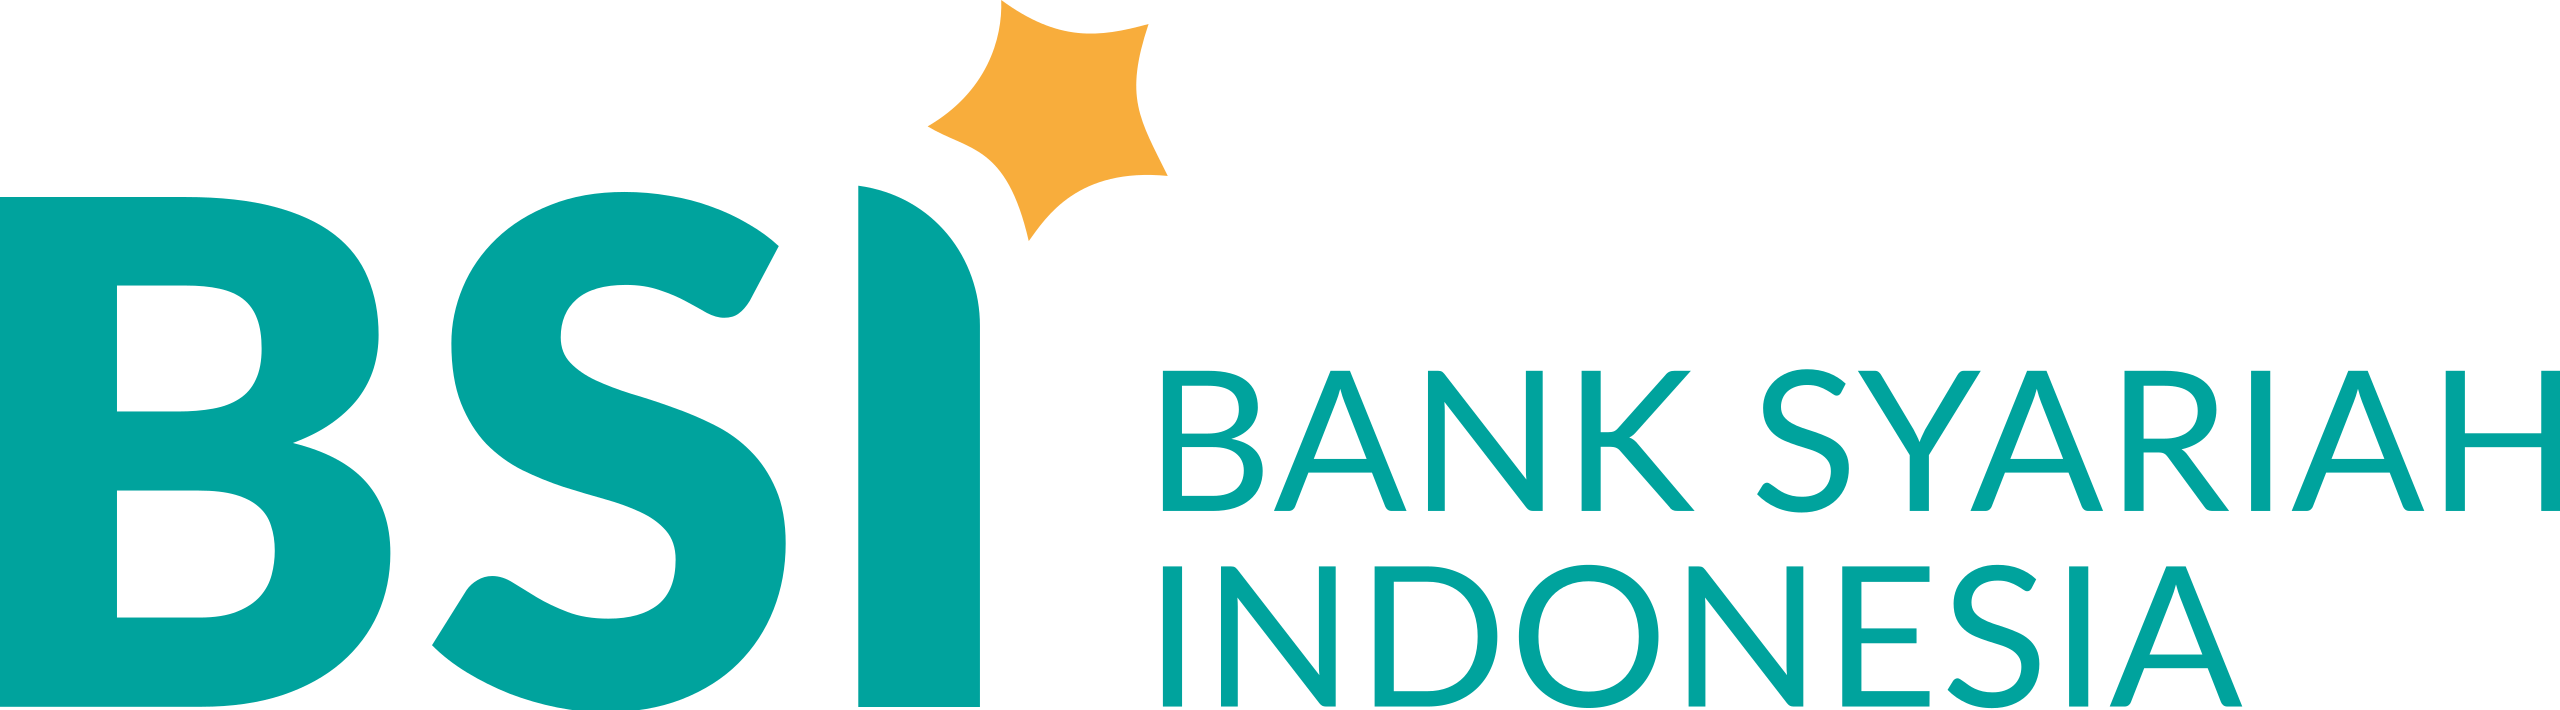 Bank_Syariah_Indonesia.svg.png